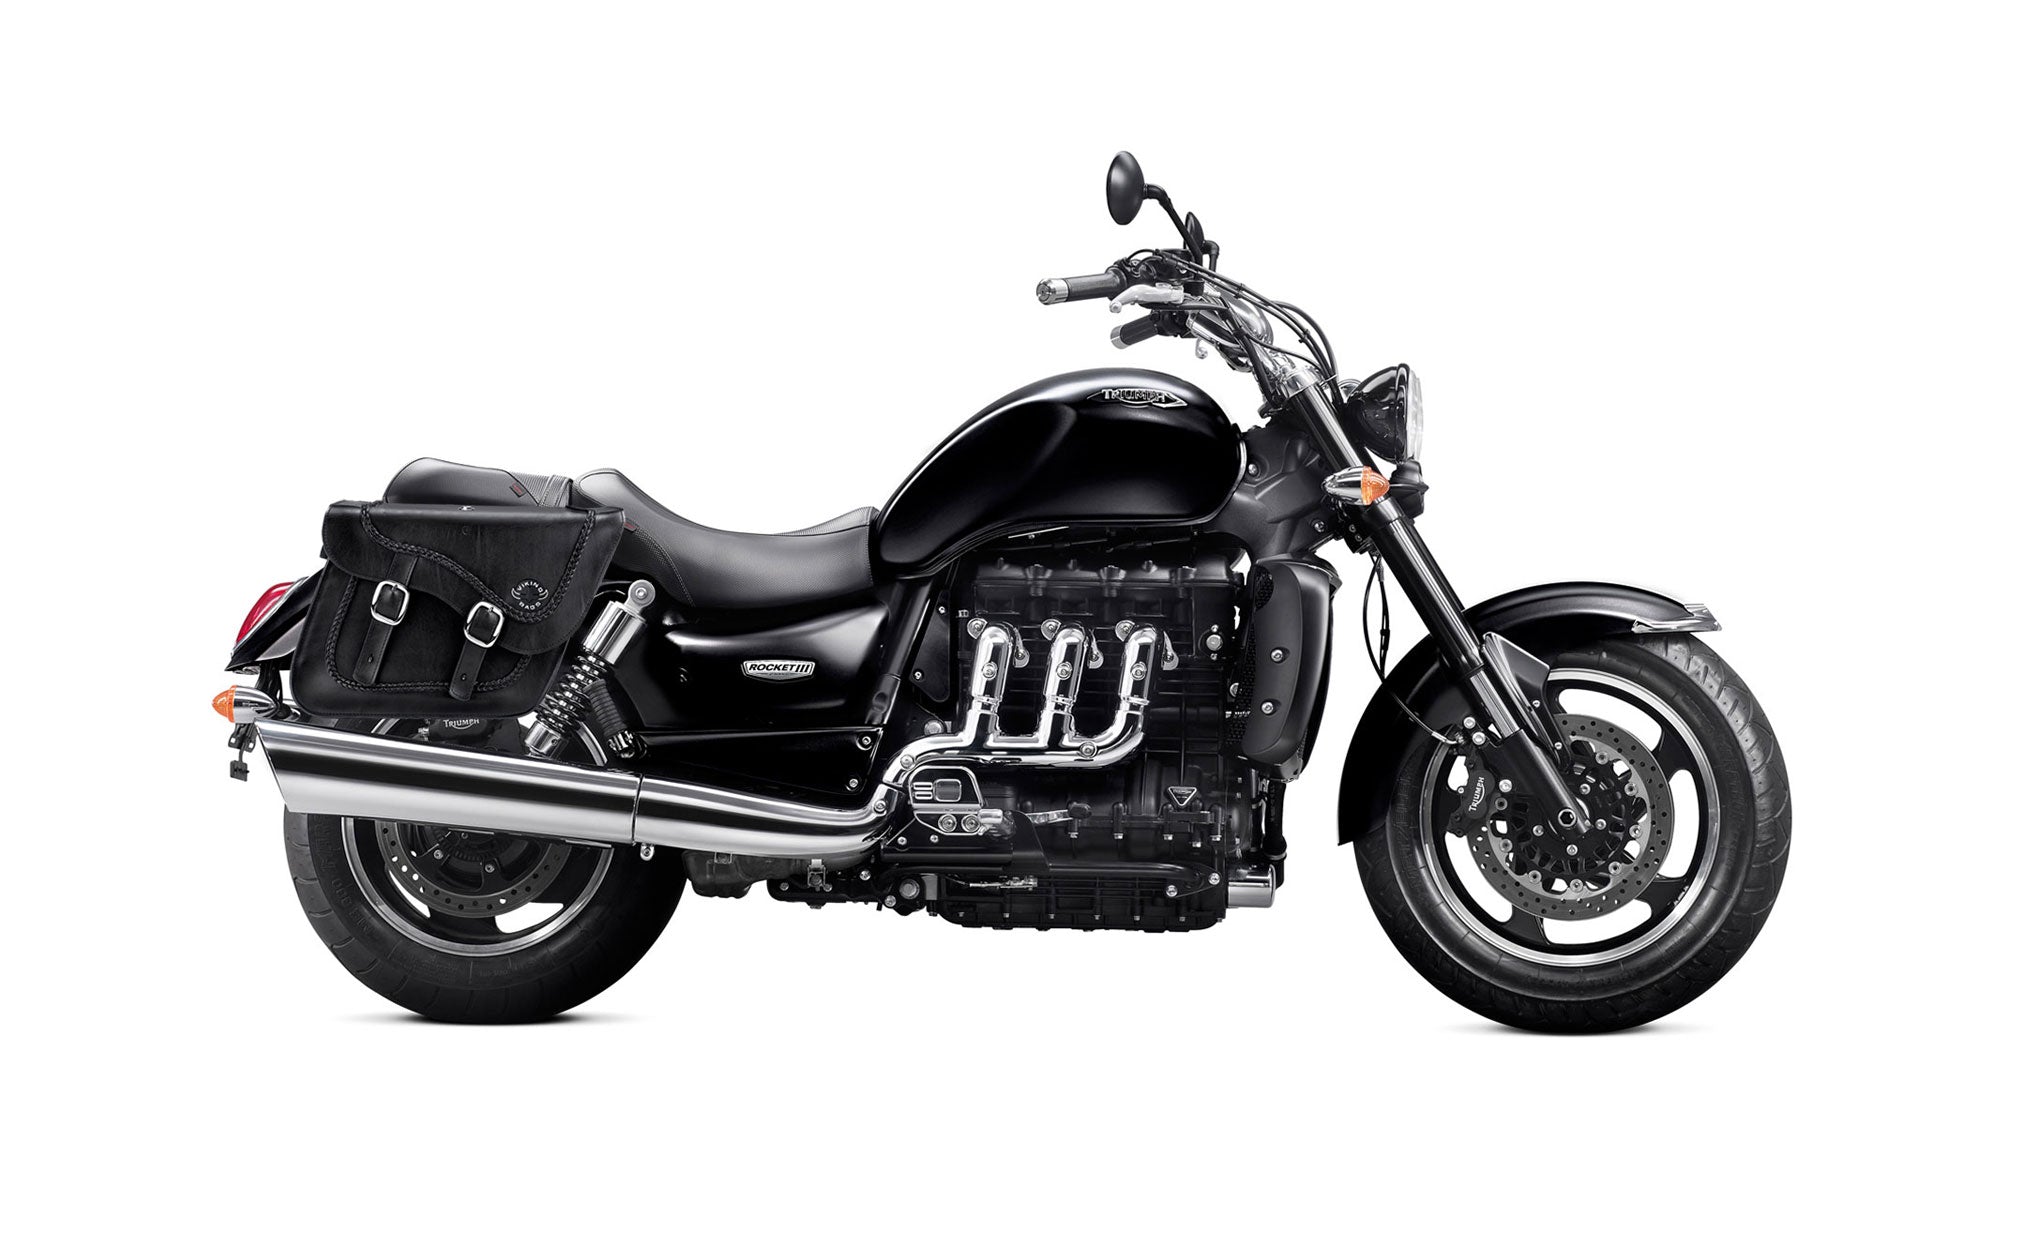 Viking Americano Triumph Rocket Iii Classic Braided Large Leather Motorcycle Saddlebags on Bike Photo @expand